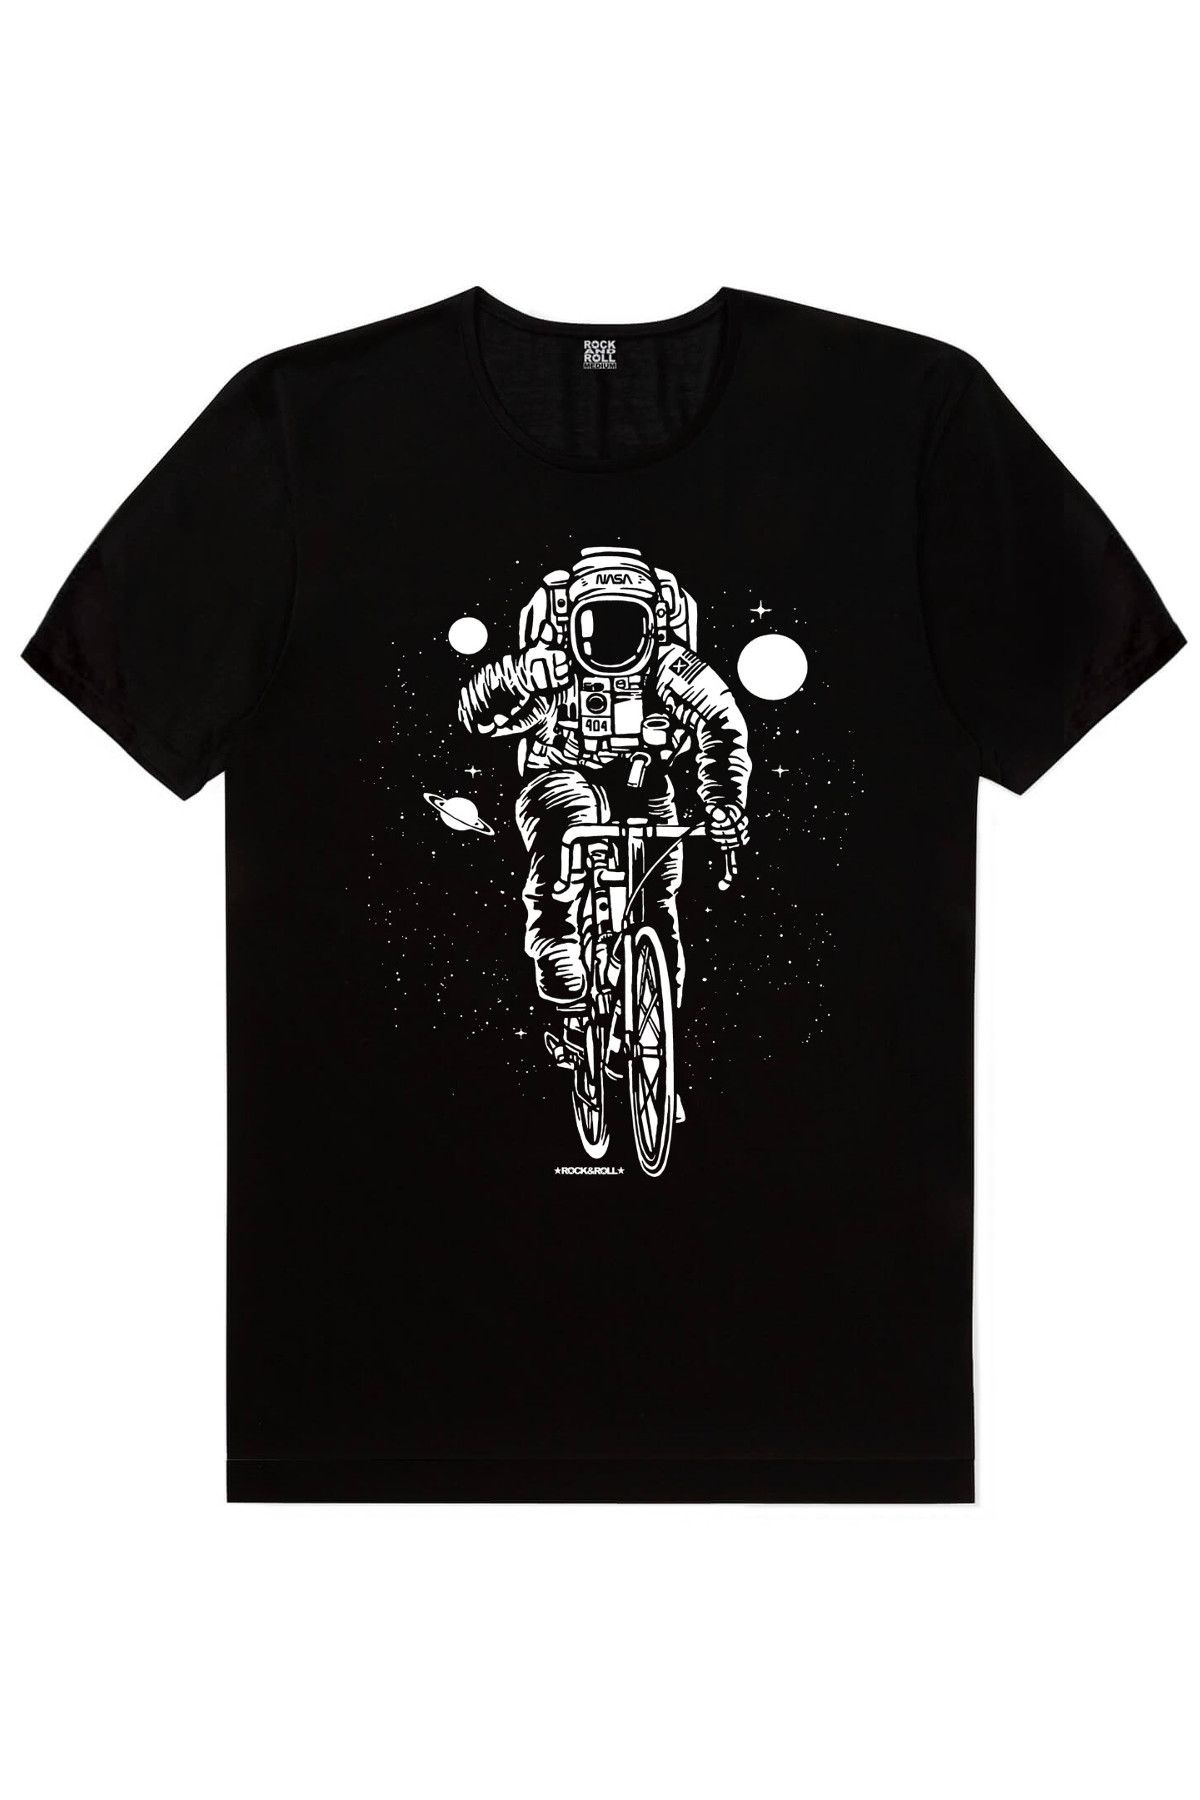 Bisikletli Astronot, Süpürgeli Astronot, Kaykaycı Astronot Erkek 3'lü Eko Paket T-shirt